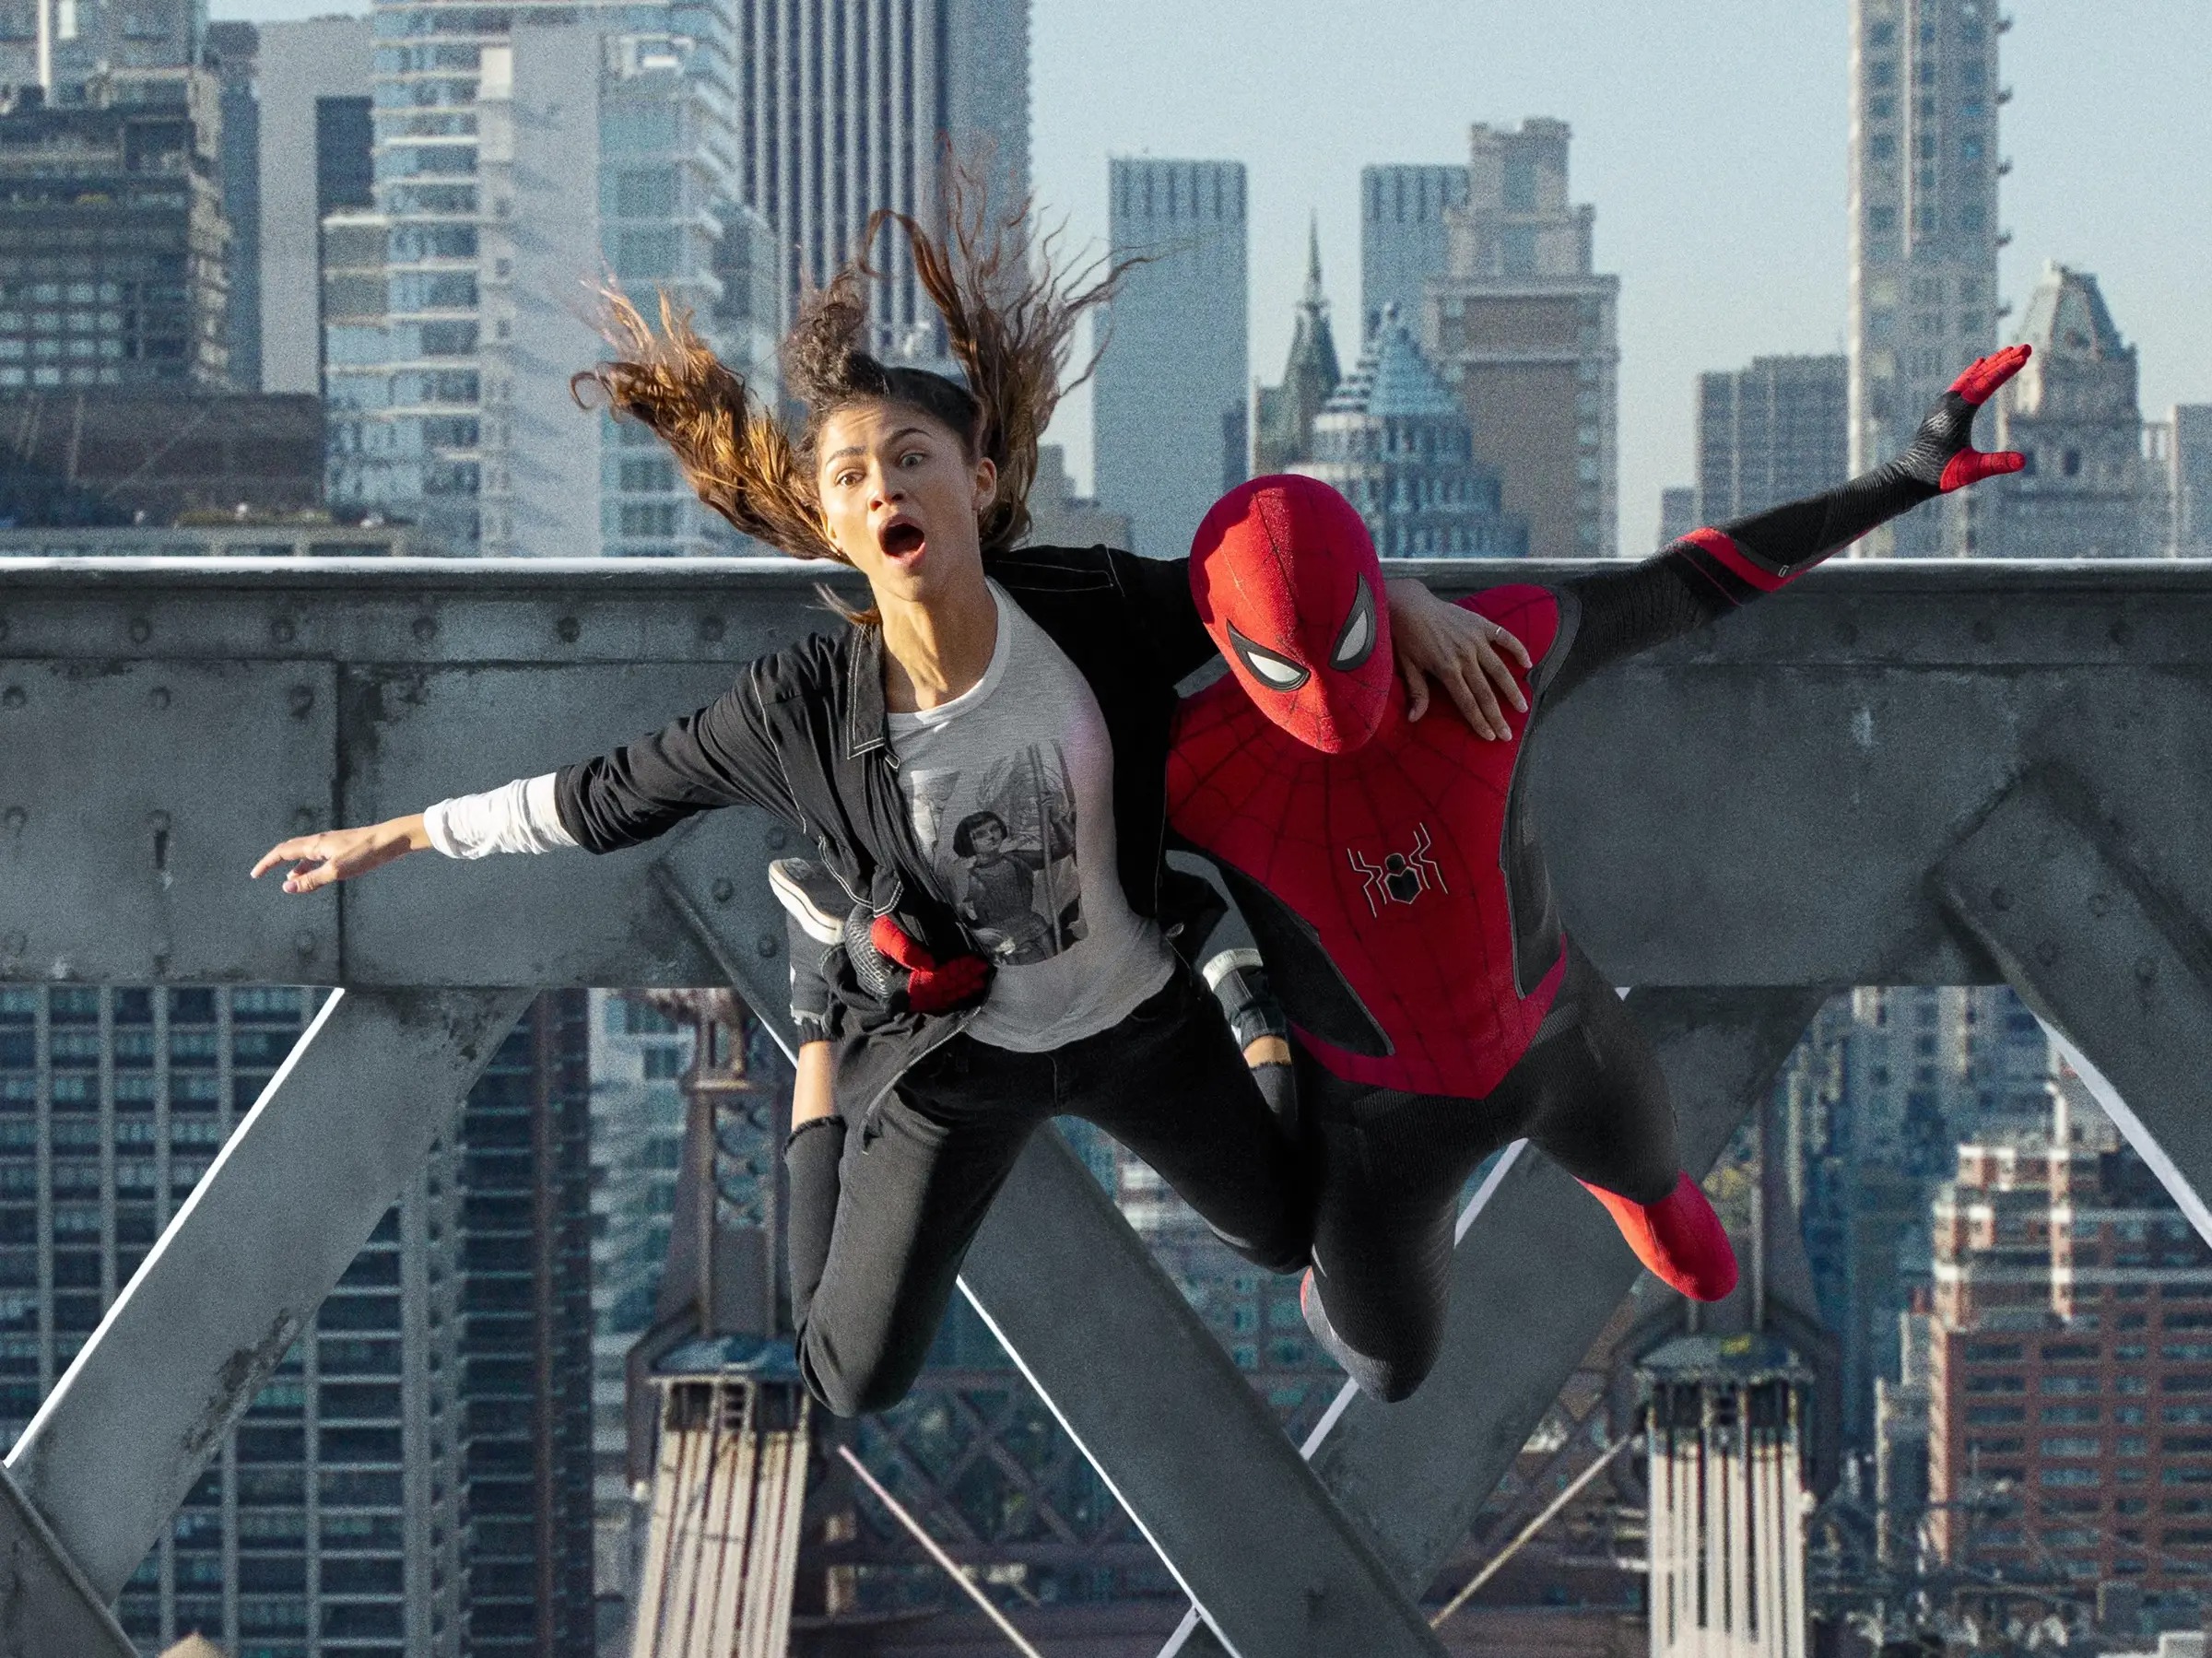 51 detalles que quizás te hayas perdido de 'Spider-Man: No Way Home' |  Business Insider España